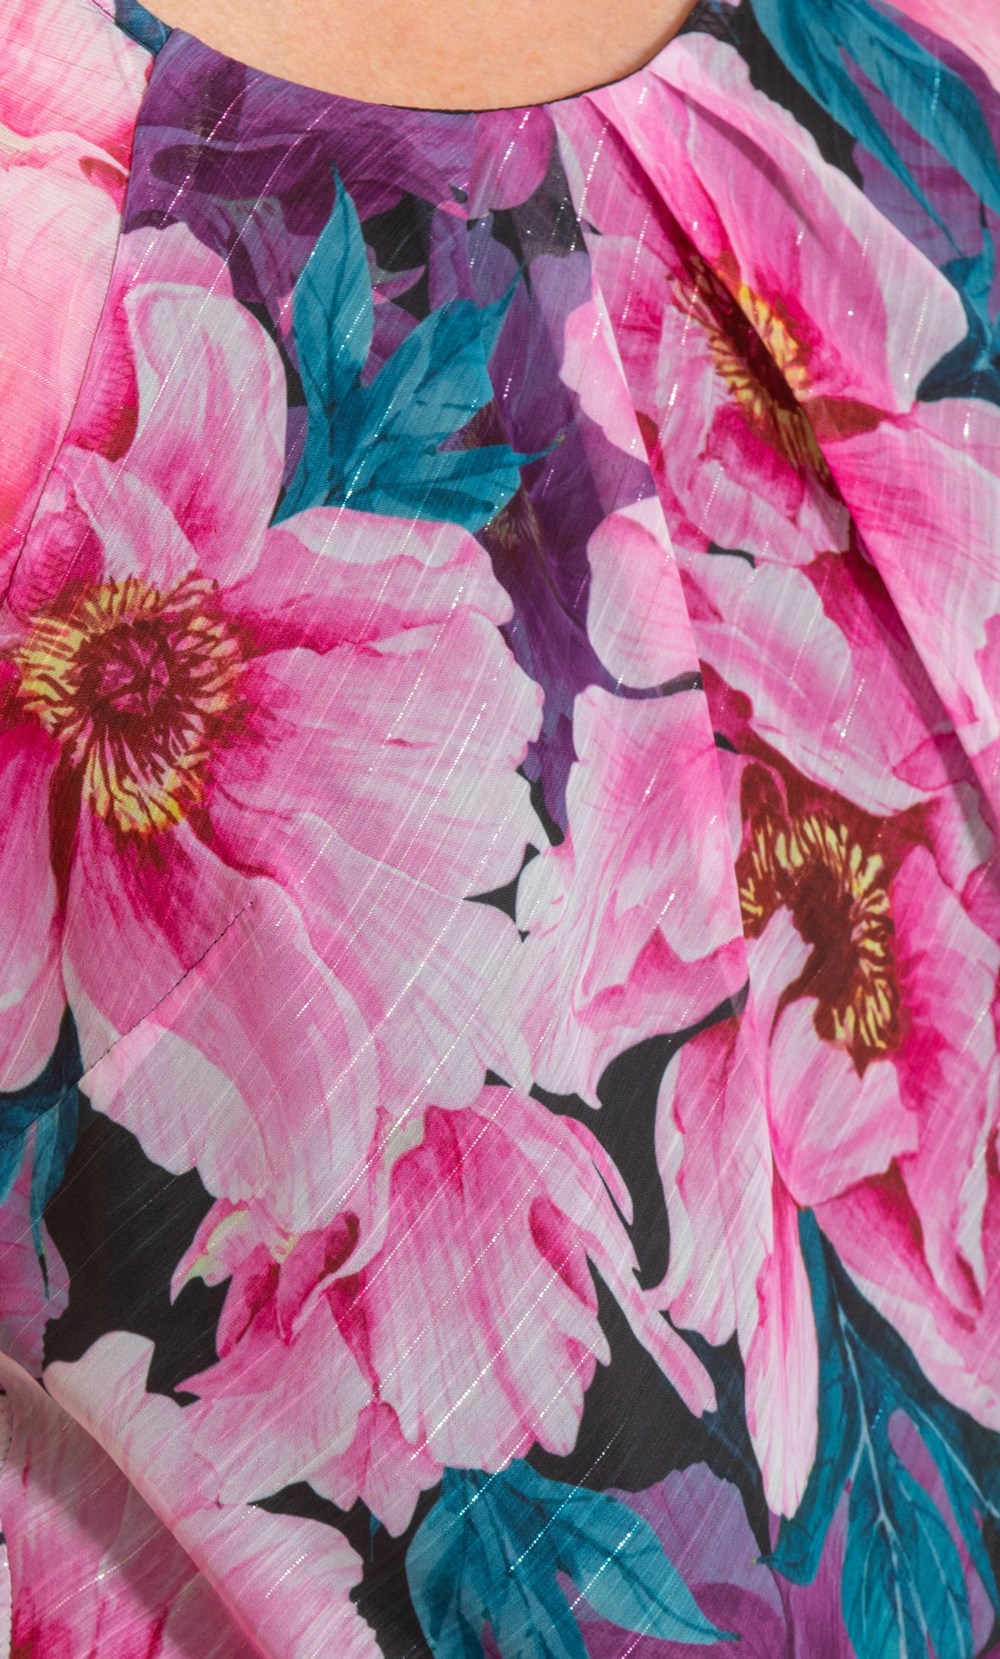 Anna Rose Bias Cut Floral Printed Chiffon Top